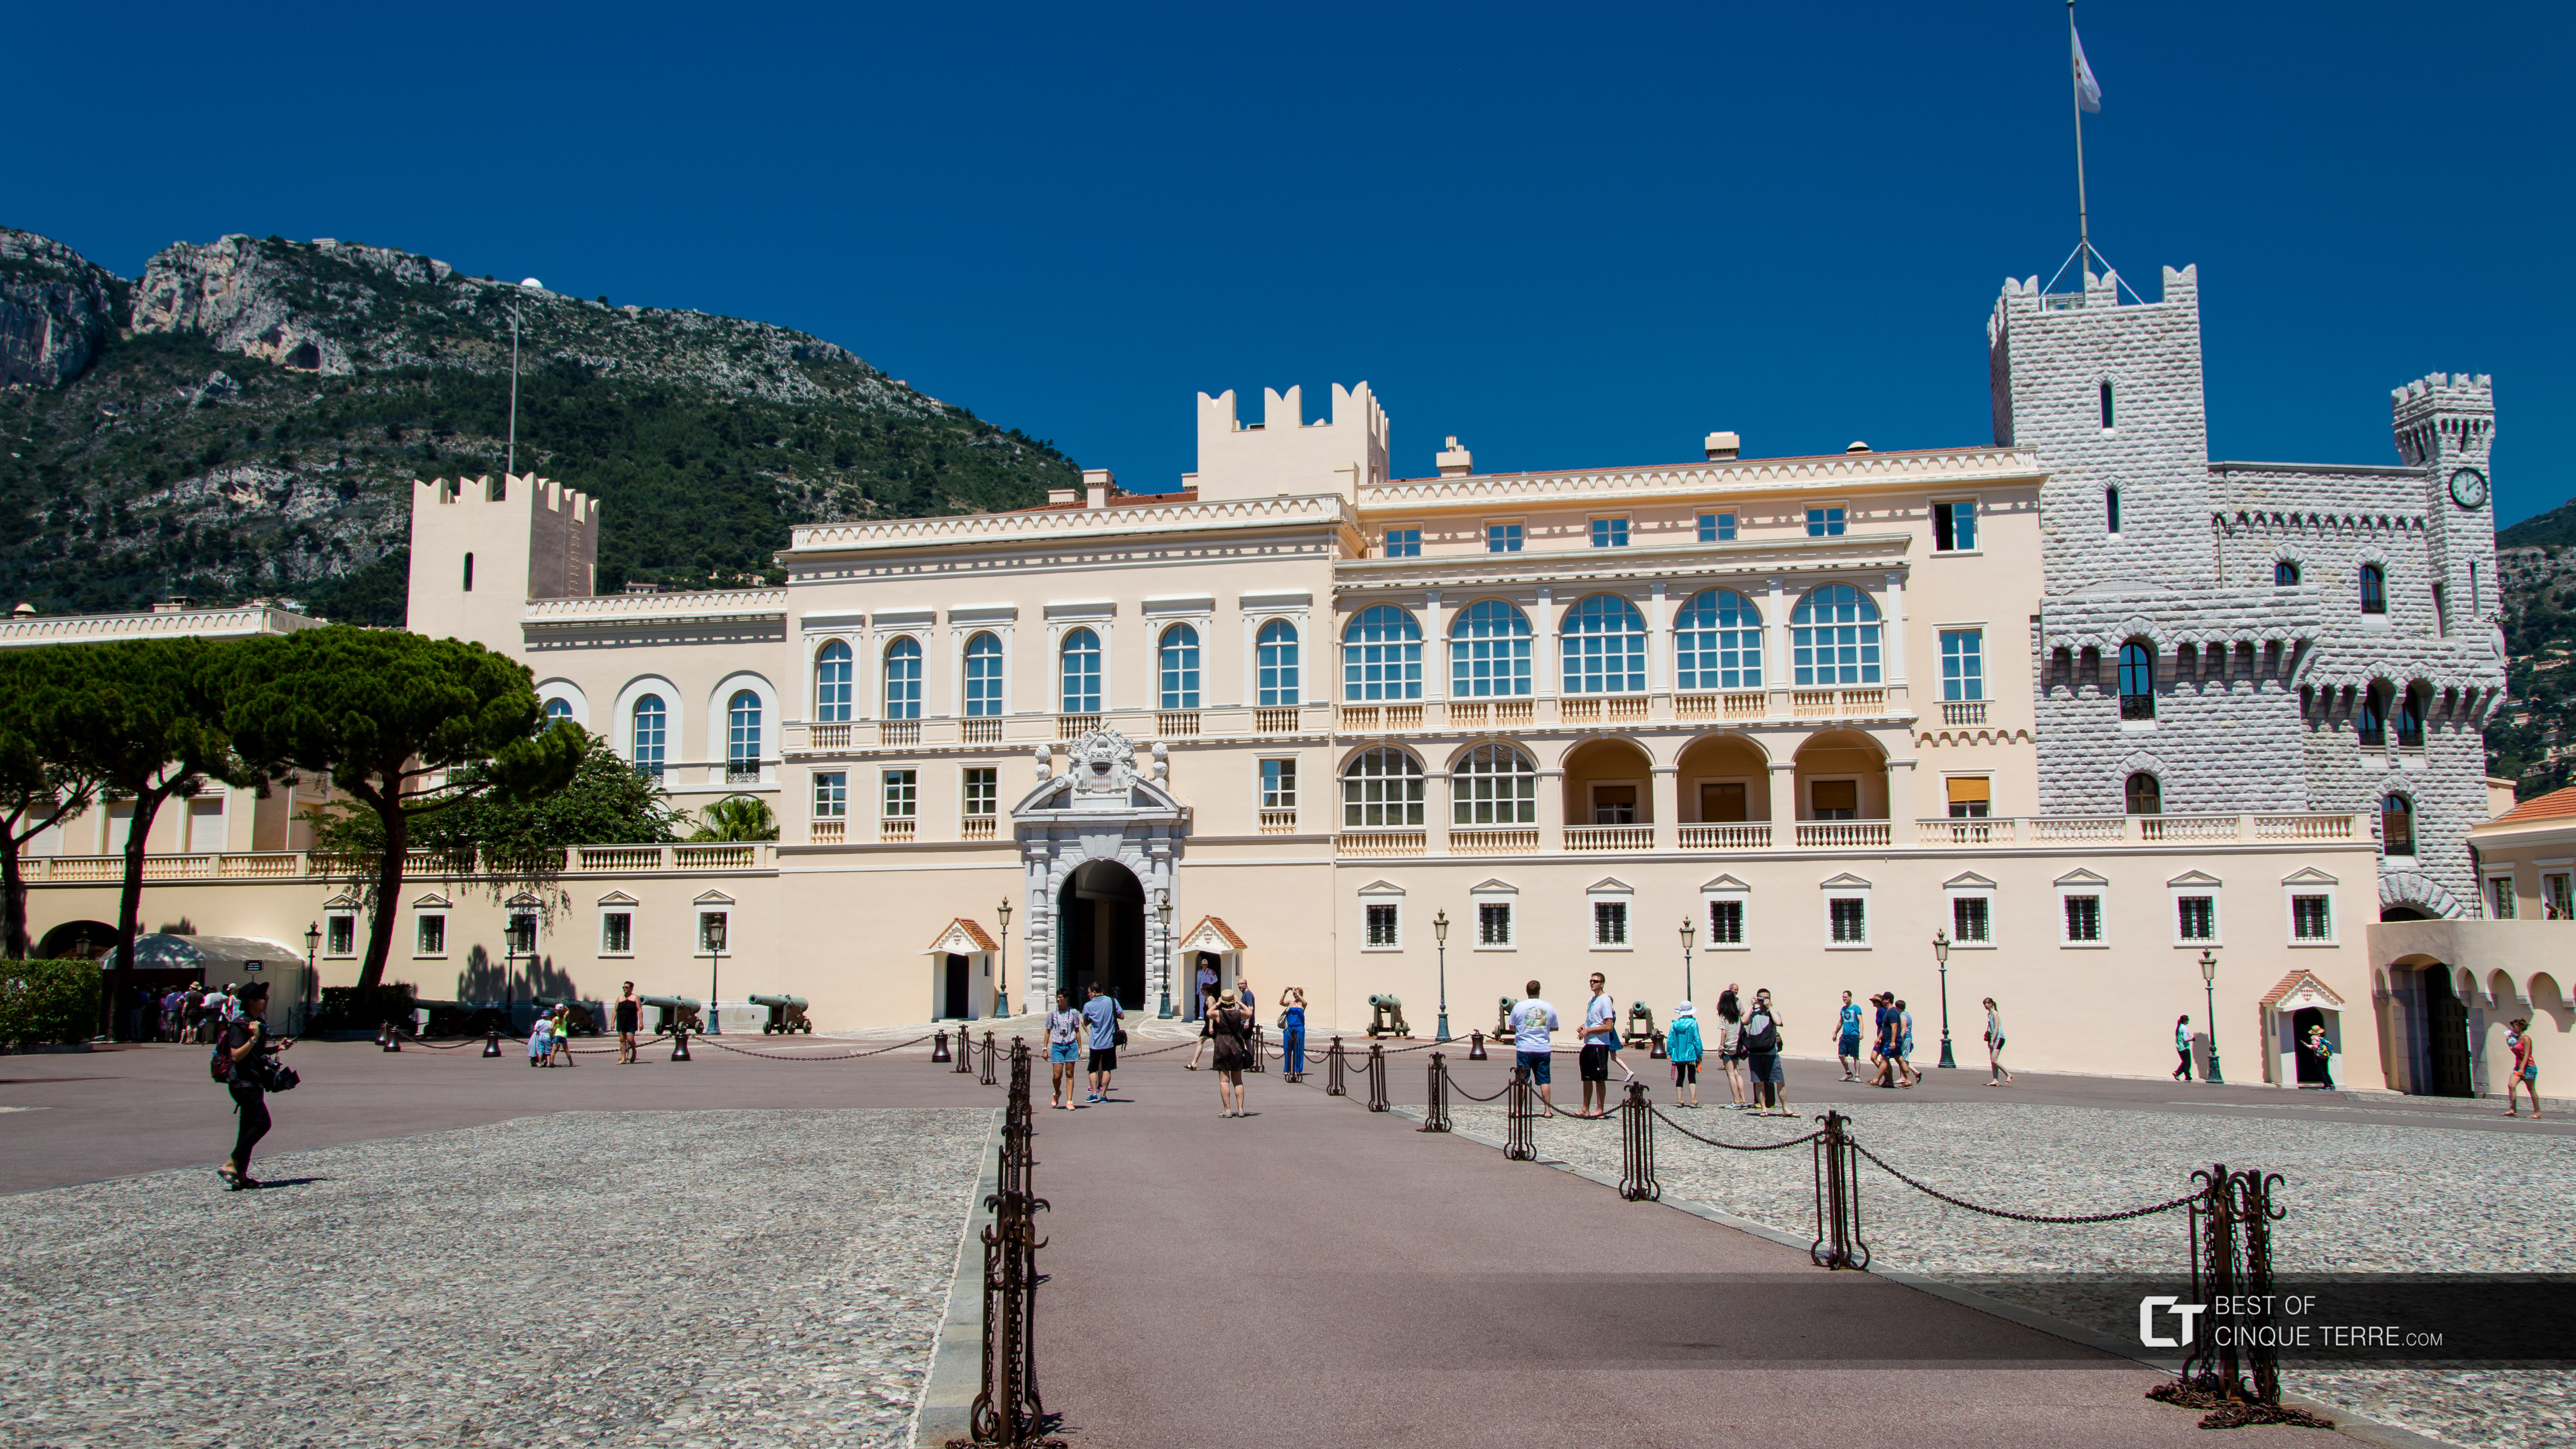 Palácio dos Príncipes de Mônaco